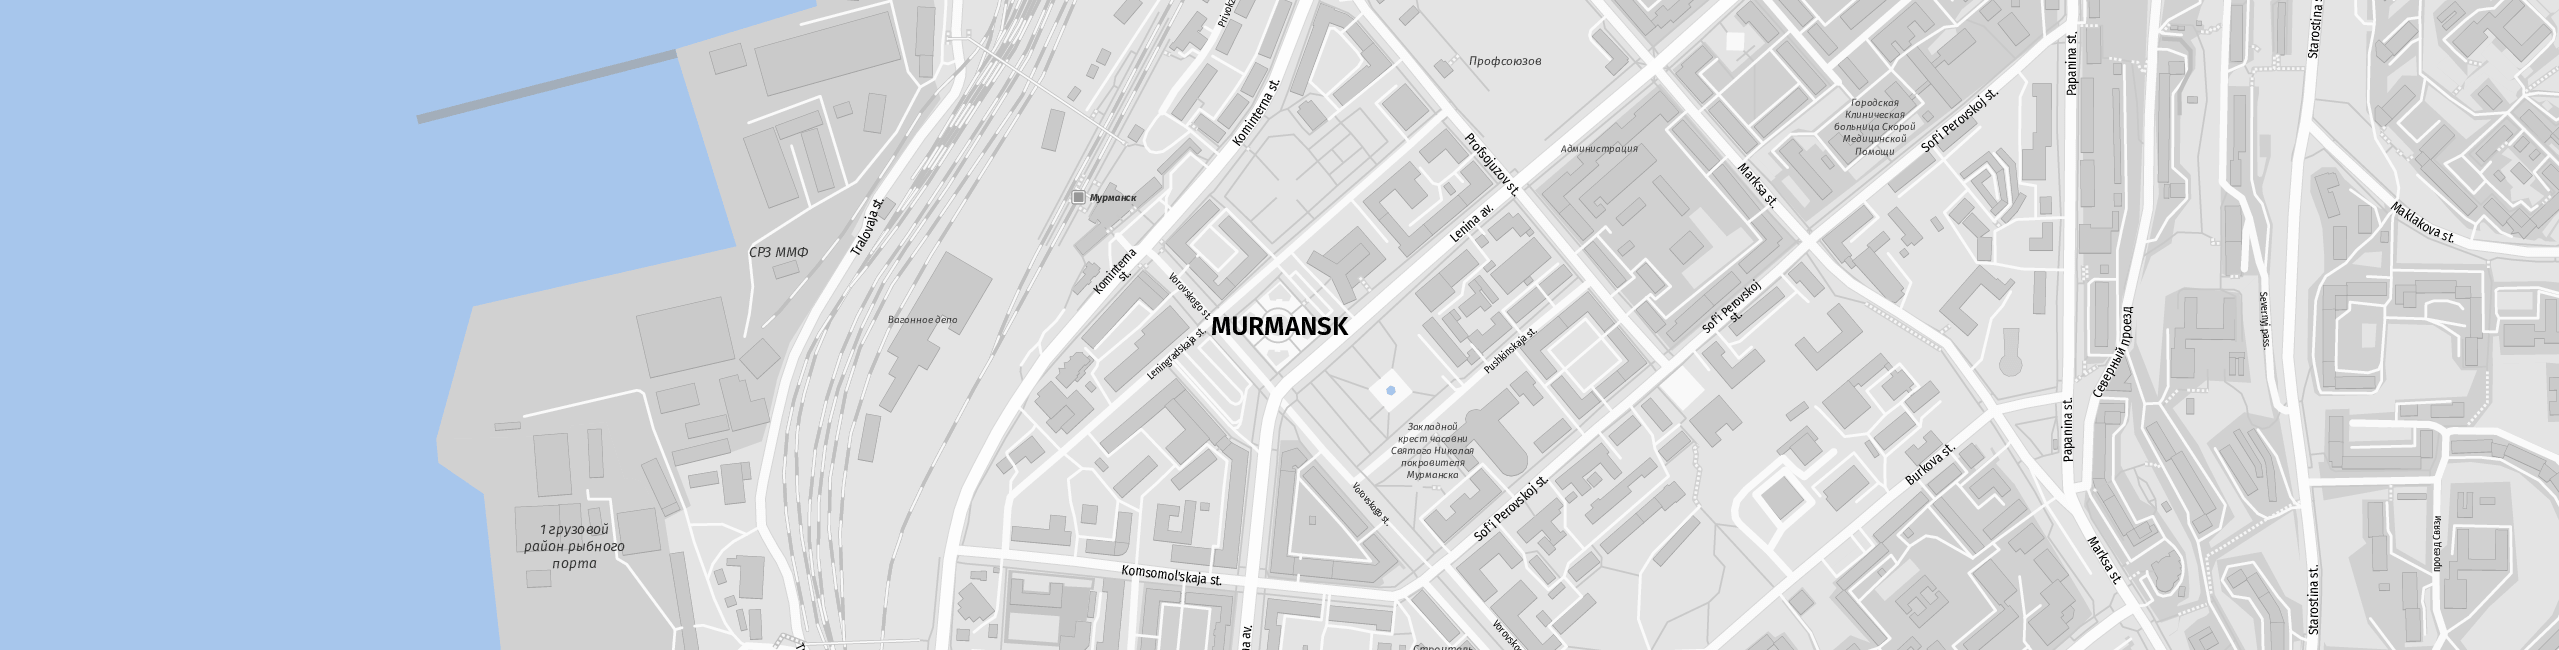 Stadtplan Murmansk zum Downloaden.